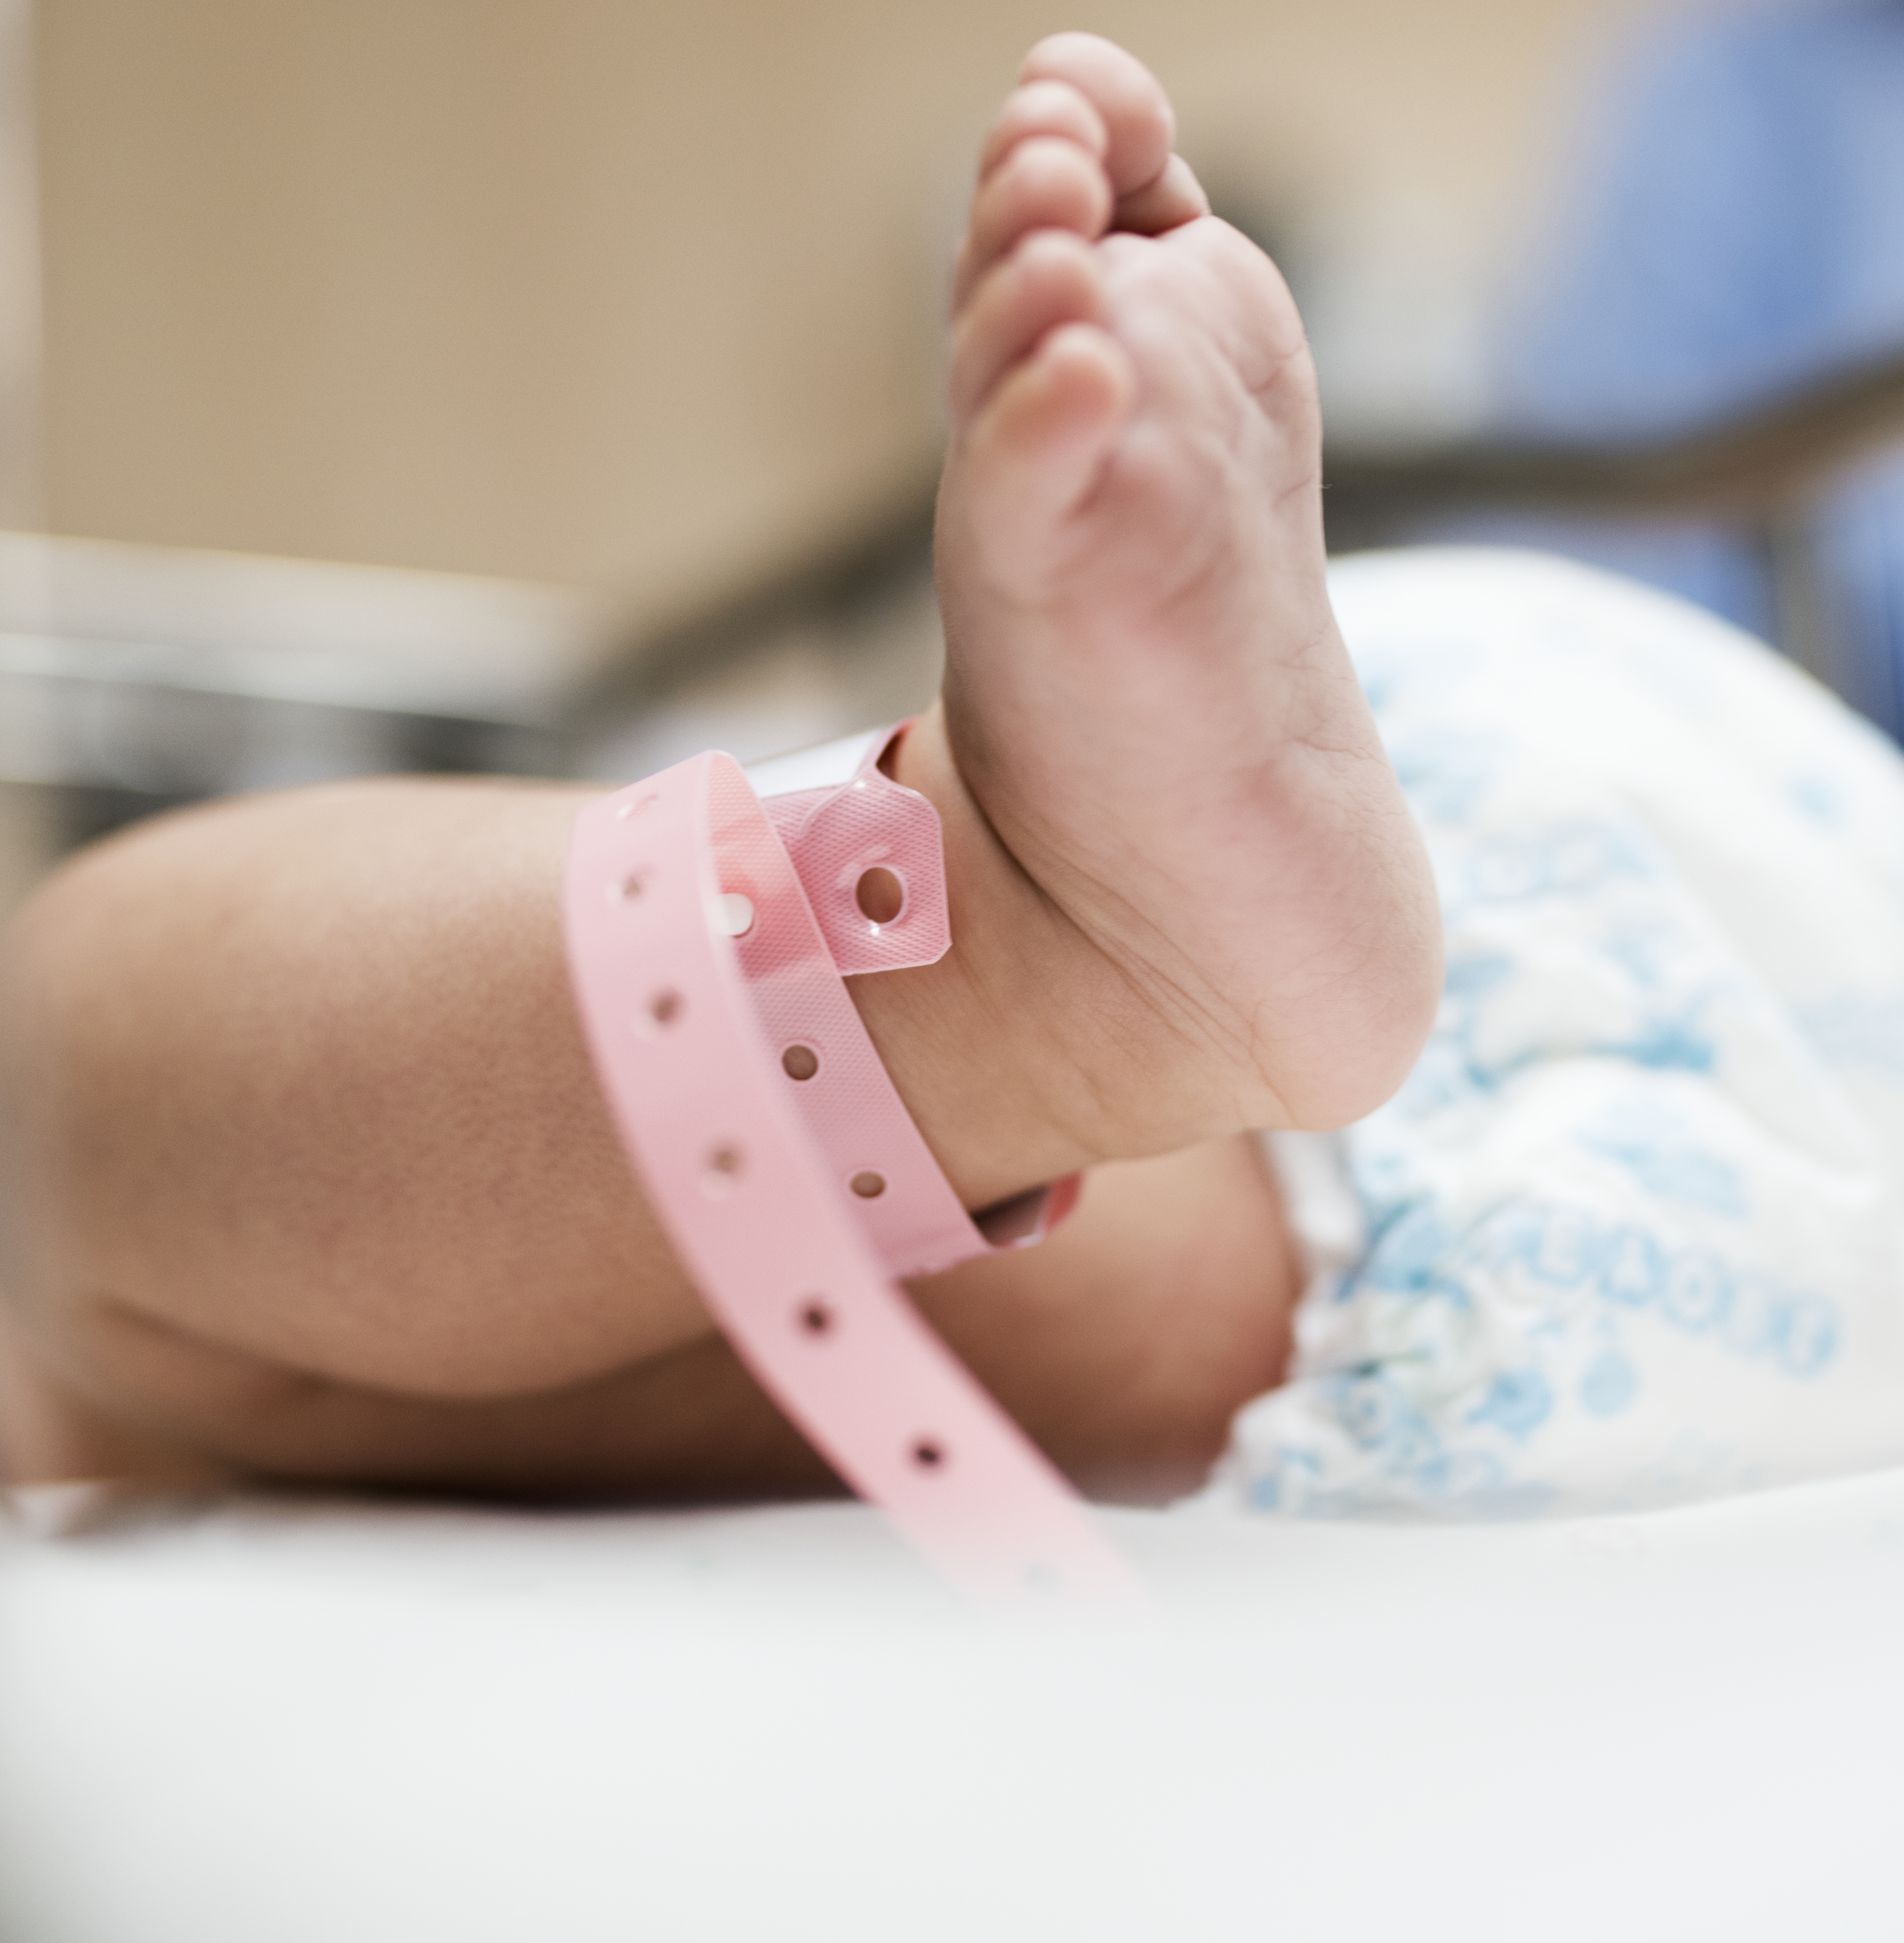 Newborn, Infant, Hospital Birth, Local Hospital, Birth